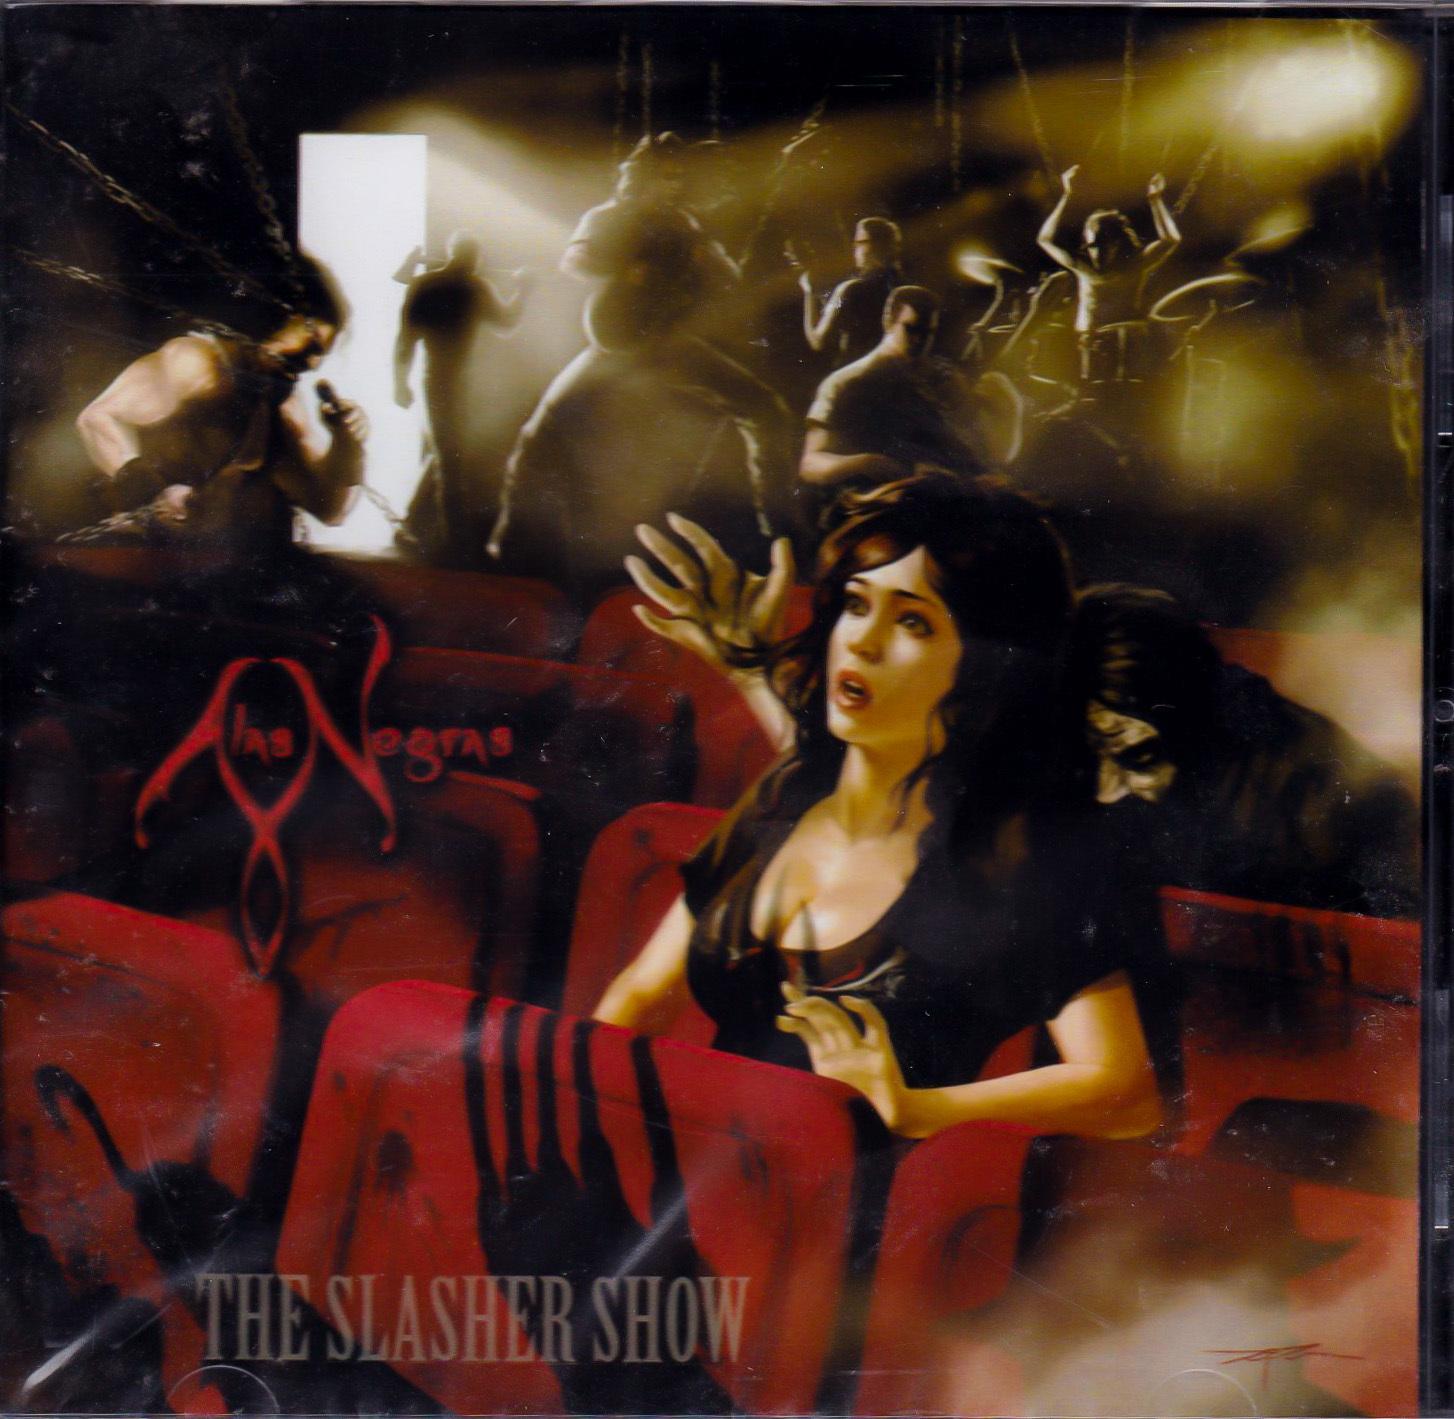 Slasher Show -Alas Negras CD